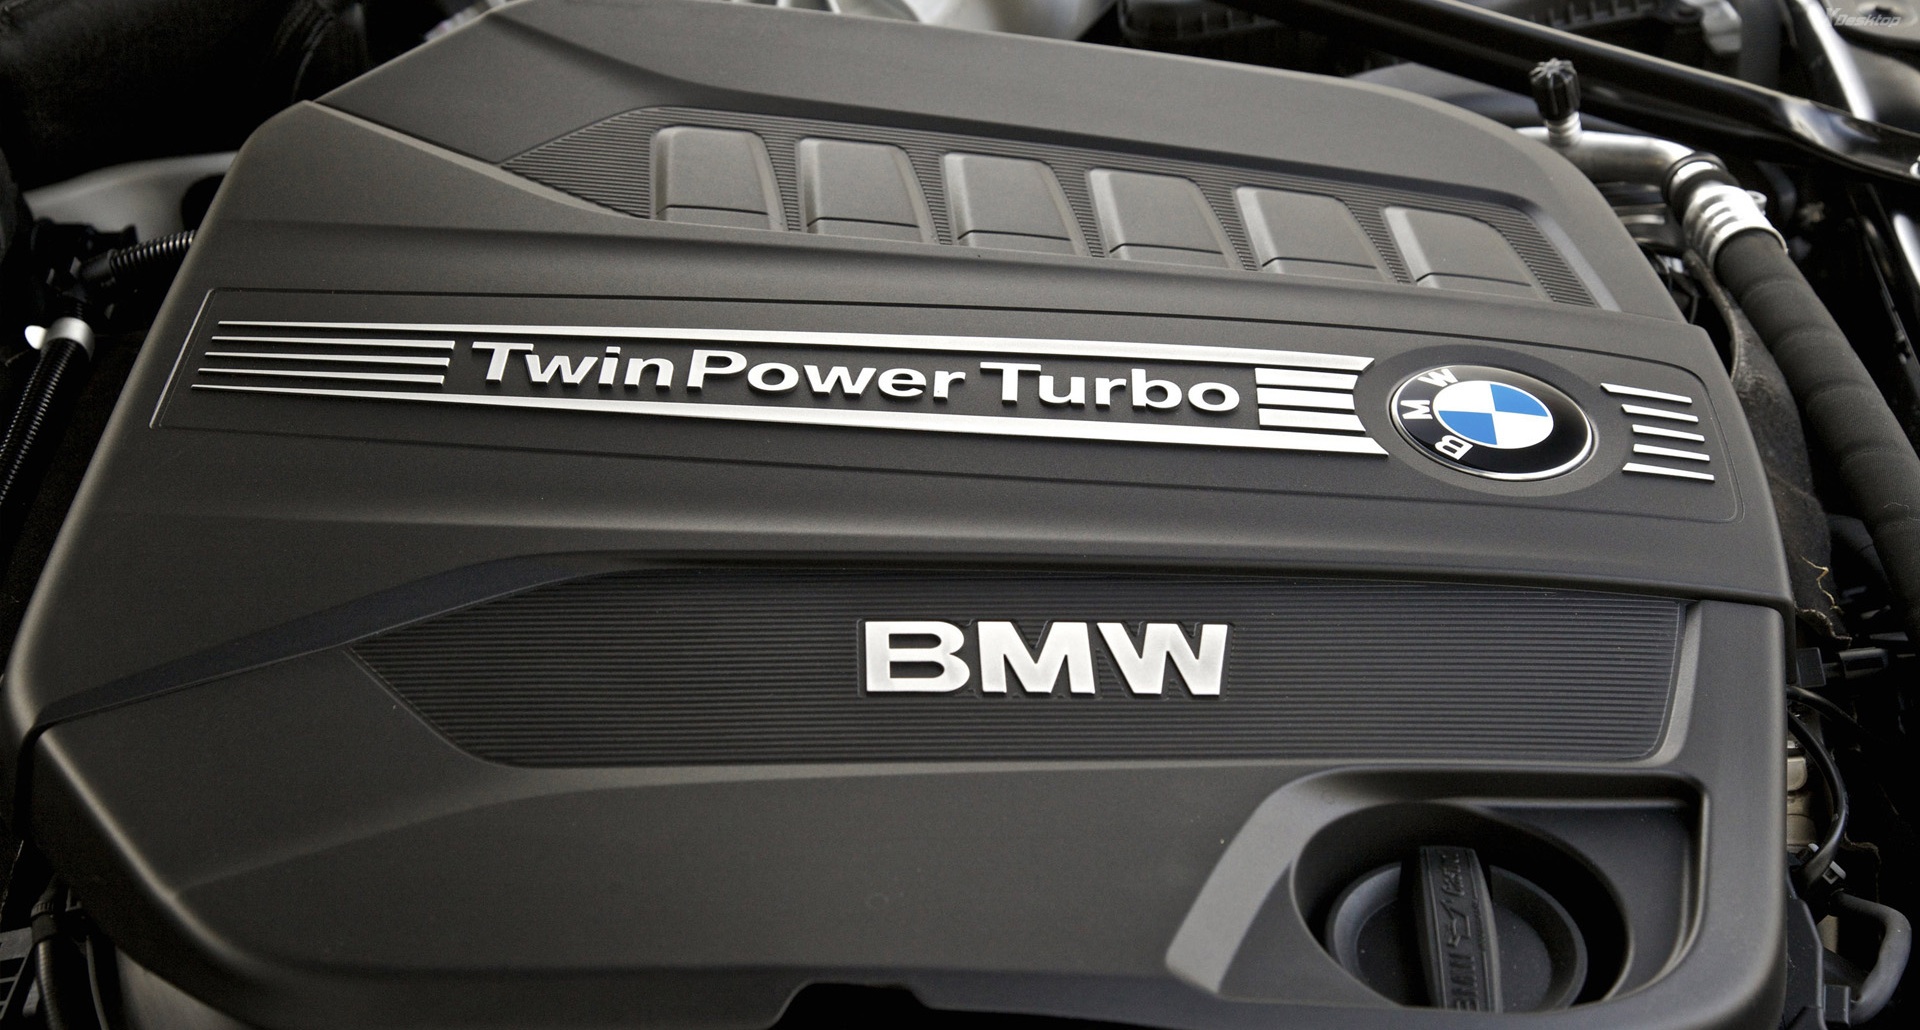 Bmw twinpower turbo #2